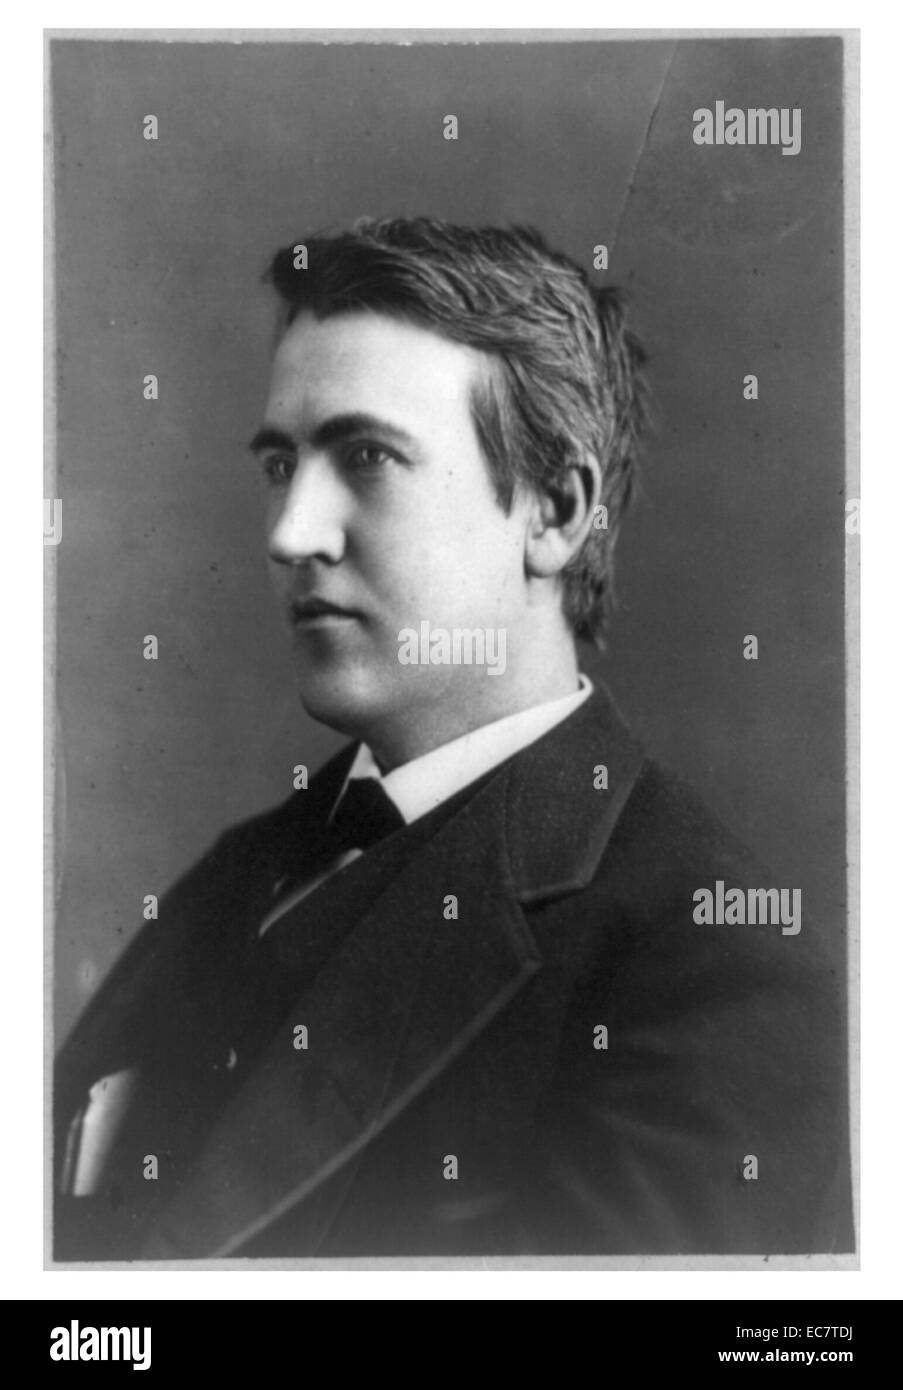 Thomas Alva Edison (Februar 11, 1847 - Oktober 18, 1931) war ein US-amerikanischer Erfinder und Geschäftsmann. Gut für die Erfindung des leichten Blub bekannt. Stockfoto